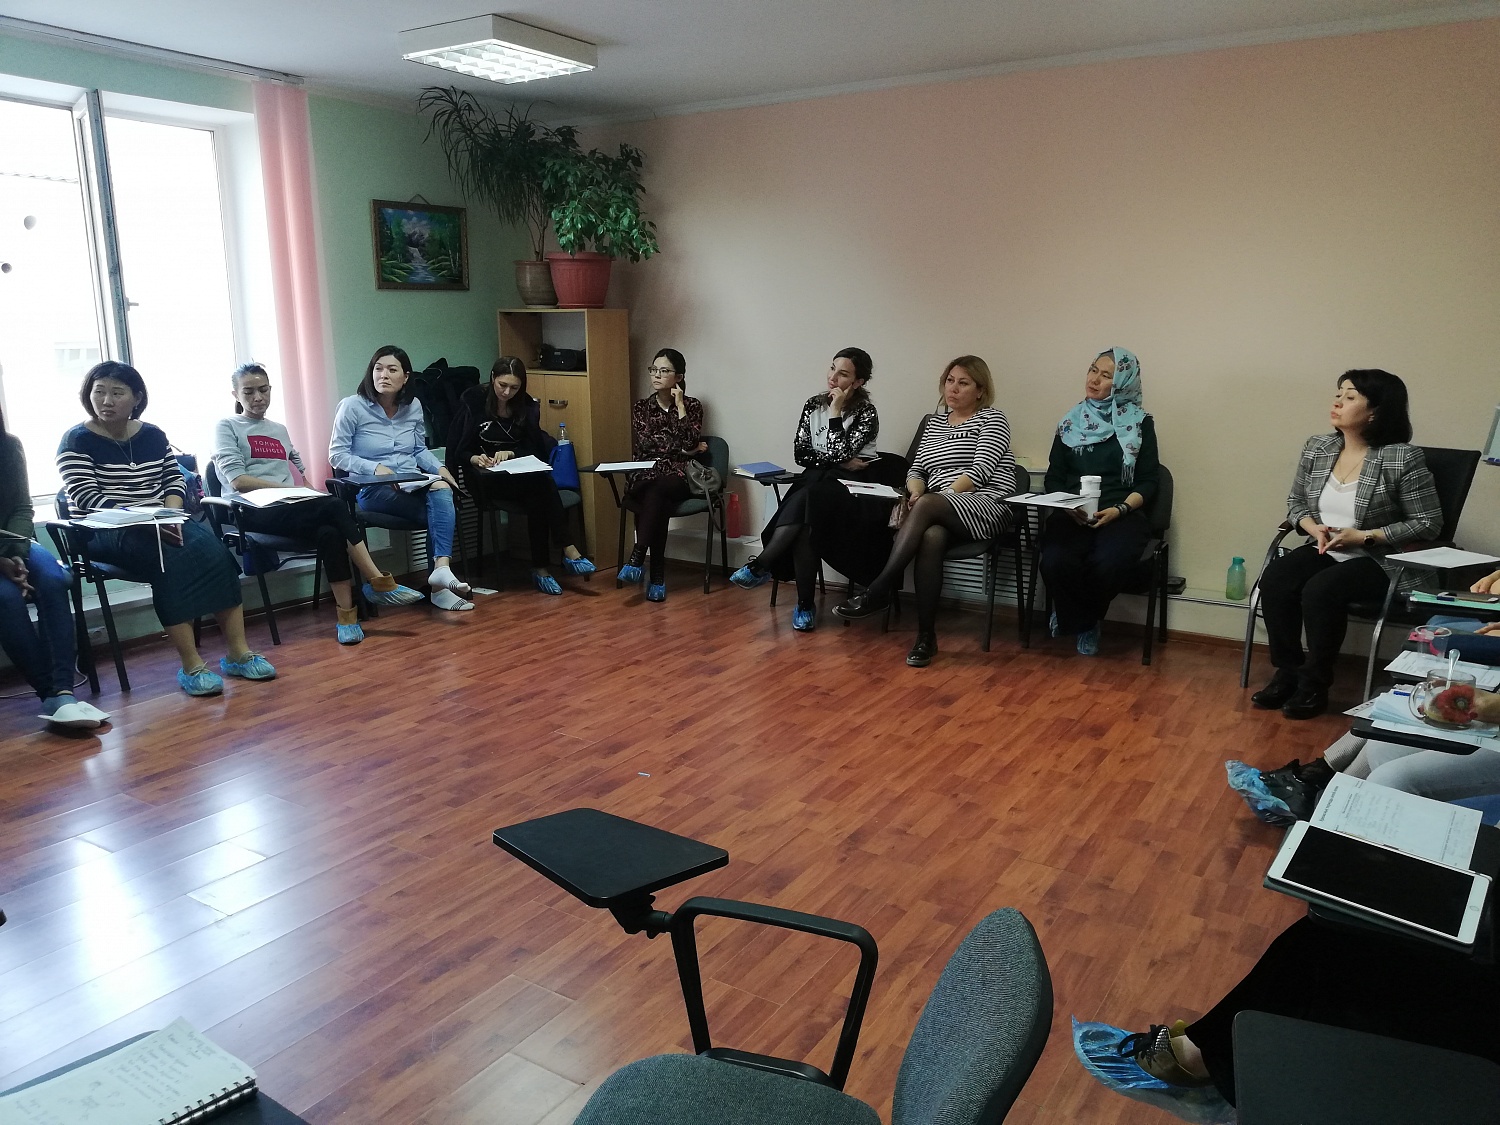 Терапевтический модуль в рамках программы "Психотерапия кризисных состояний" г. Нур-Султан 2019г